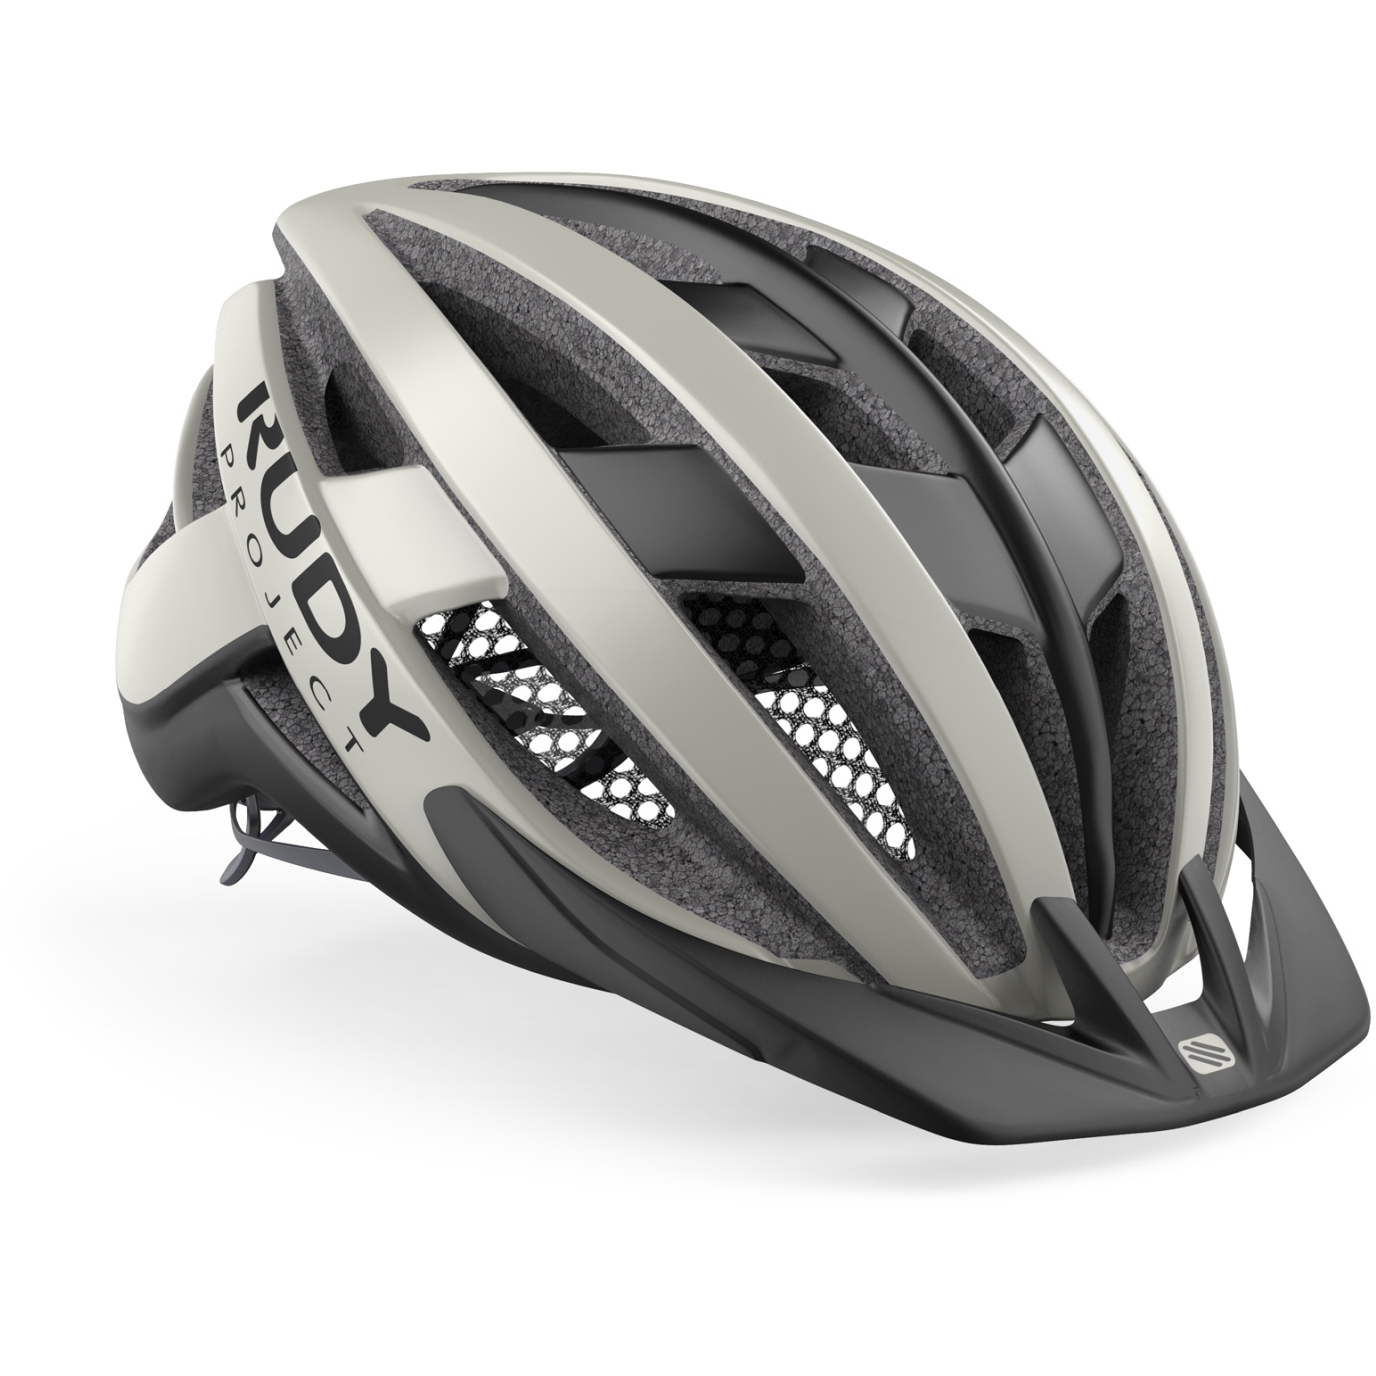 Produktbild von Rudy Project Venger Cross Helm - Light Grey/Black (Matte)